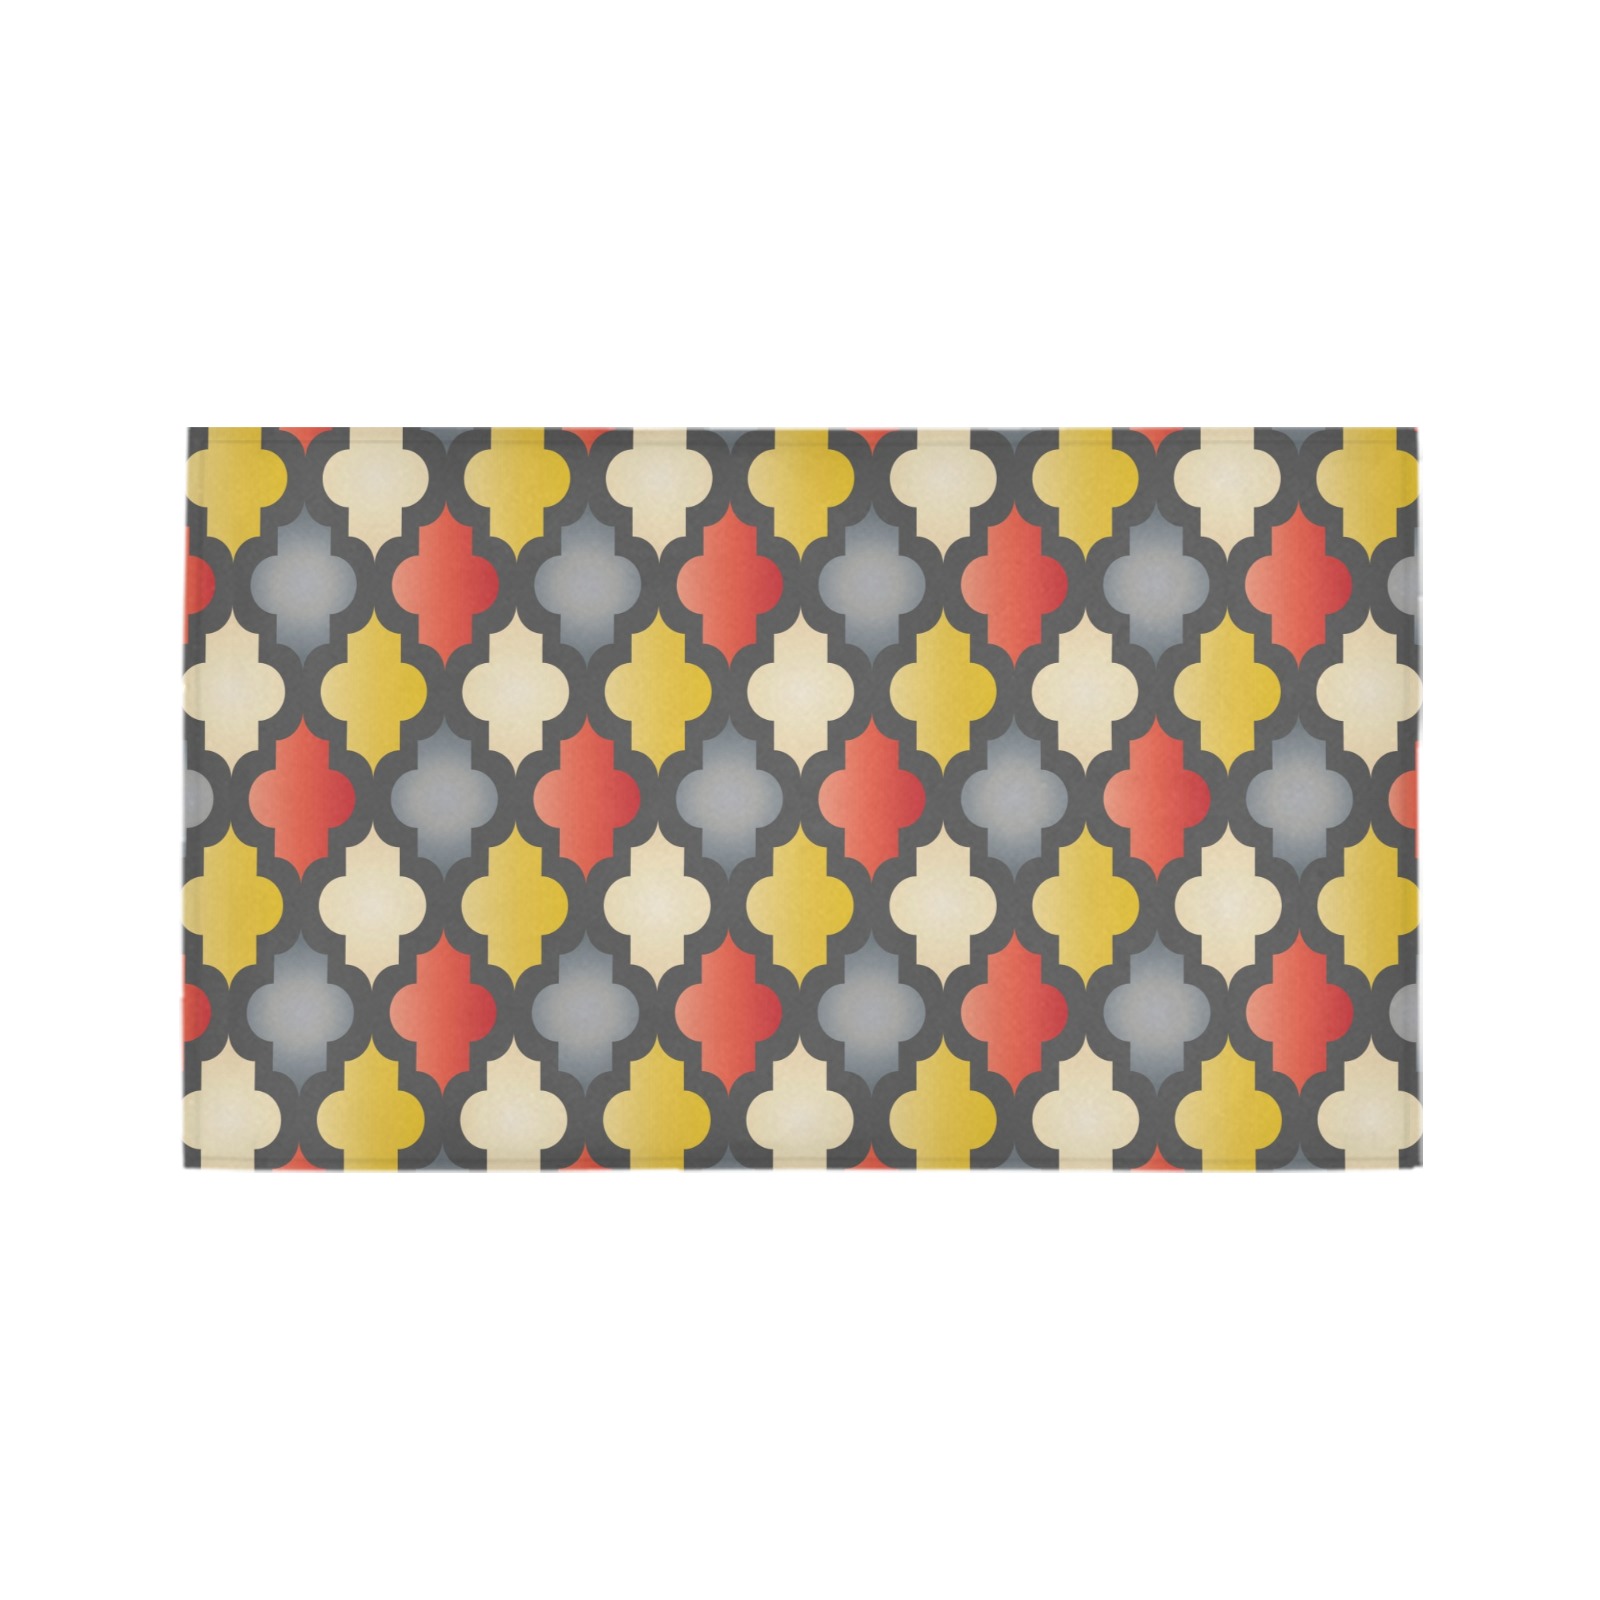 Moroccan Trellis Azalea Doormat 30" x 18" (Sponge Material)